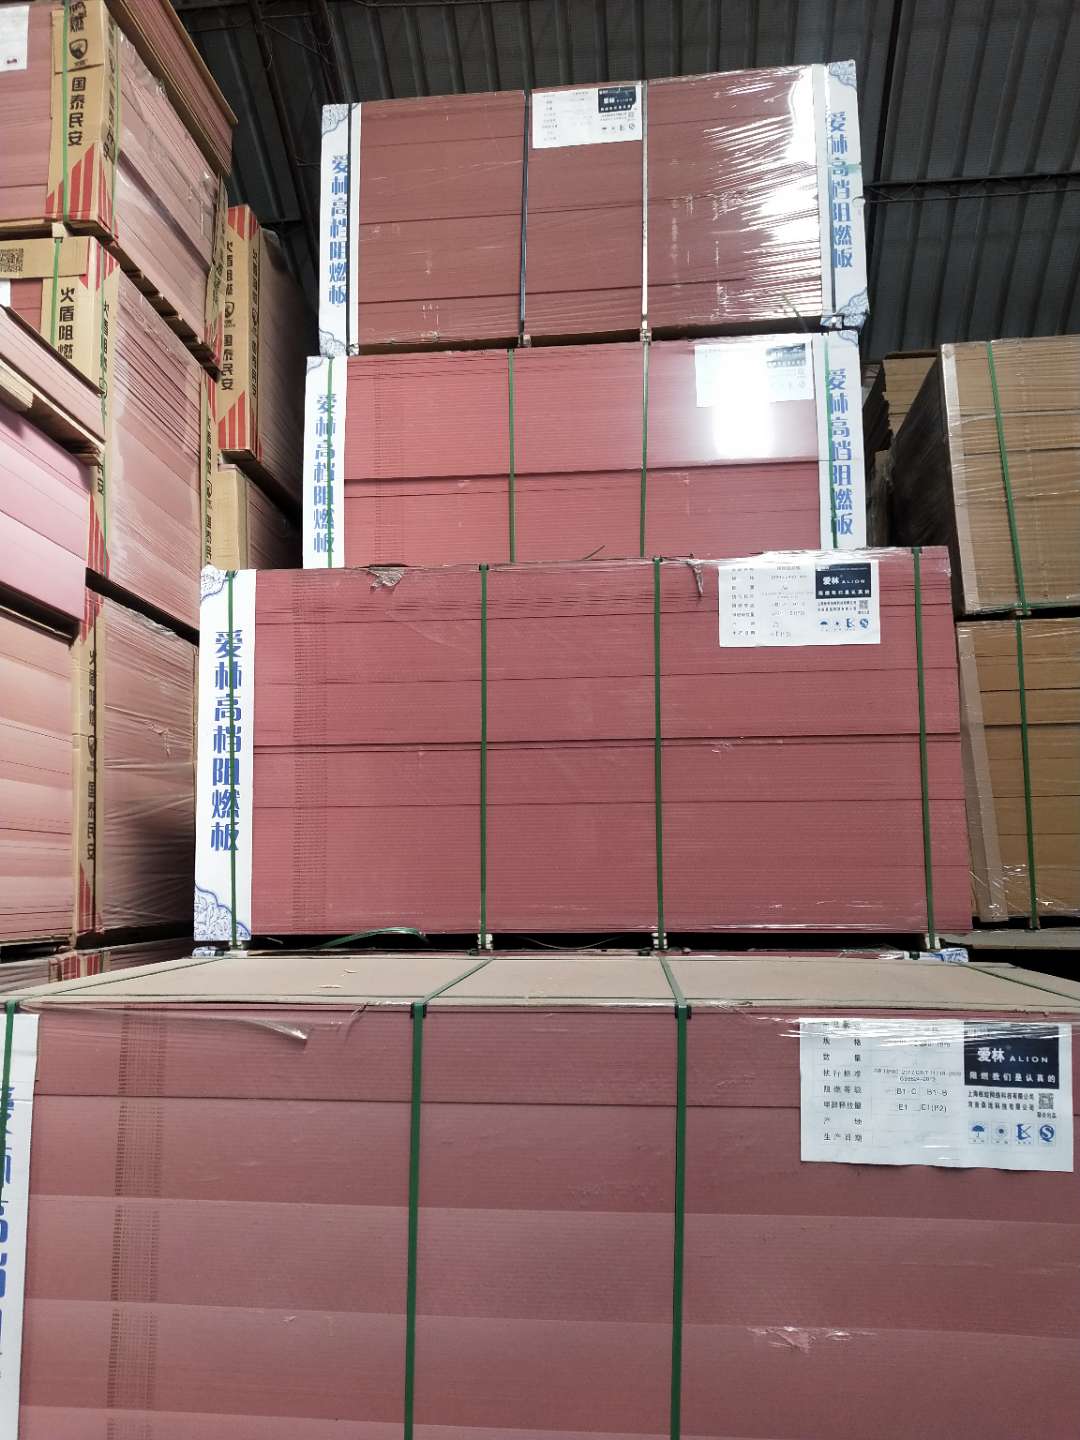 阻燃密度板哪里有卖 阻燃密度板批发 阻燃密度板价格【北京耐美力国际澳松板贸易有限公司】图片